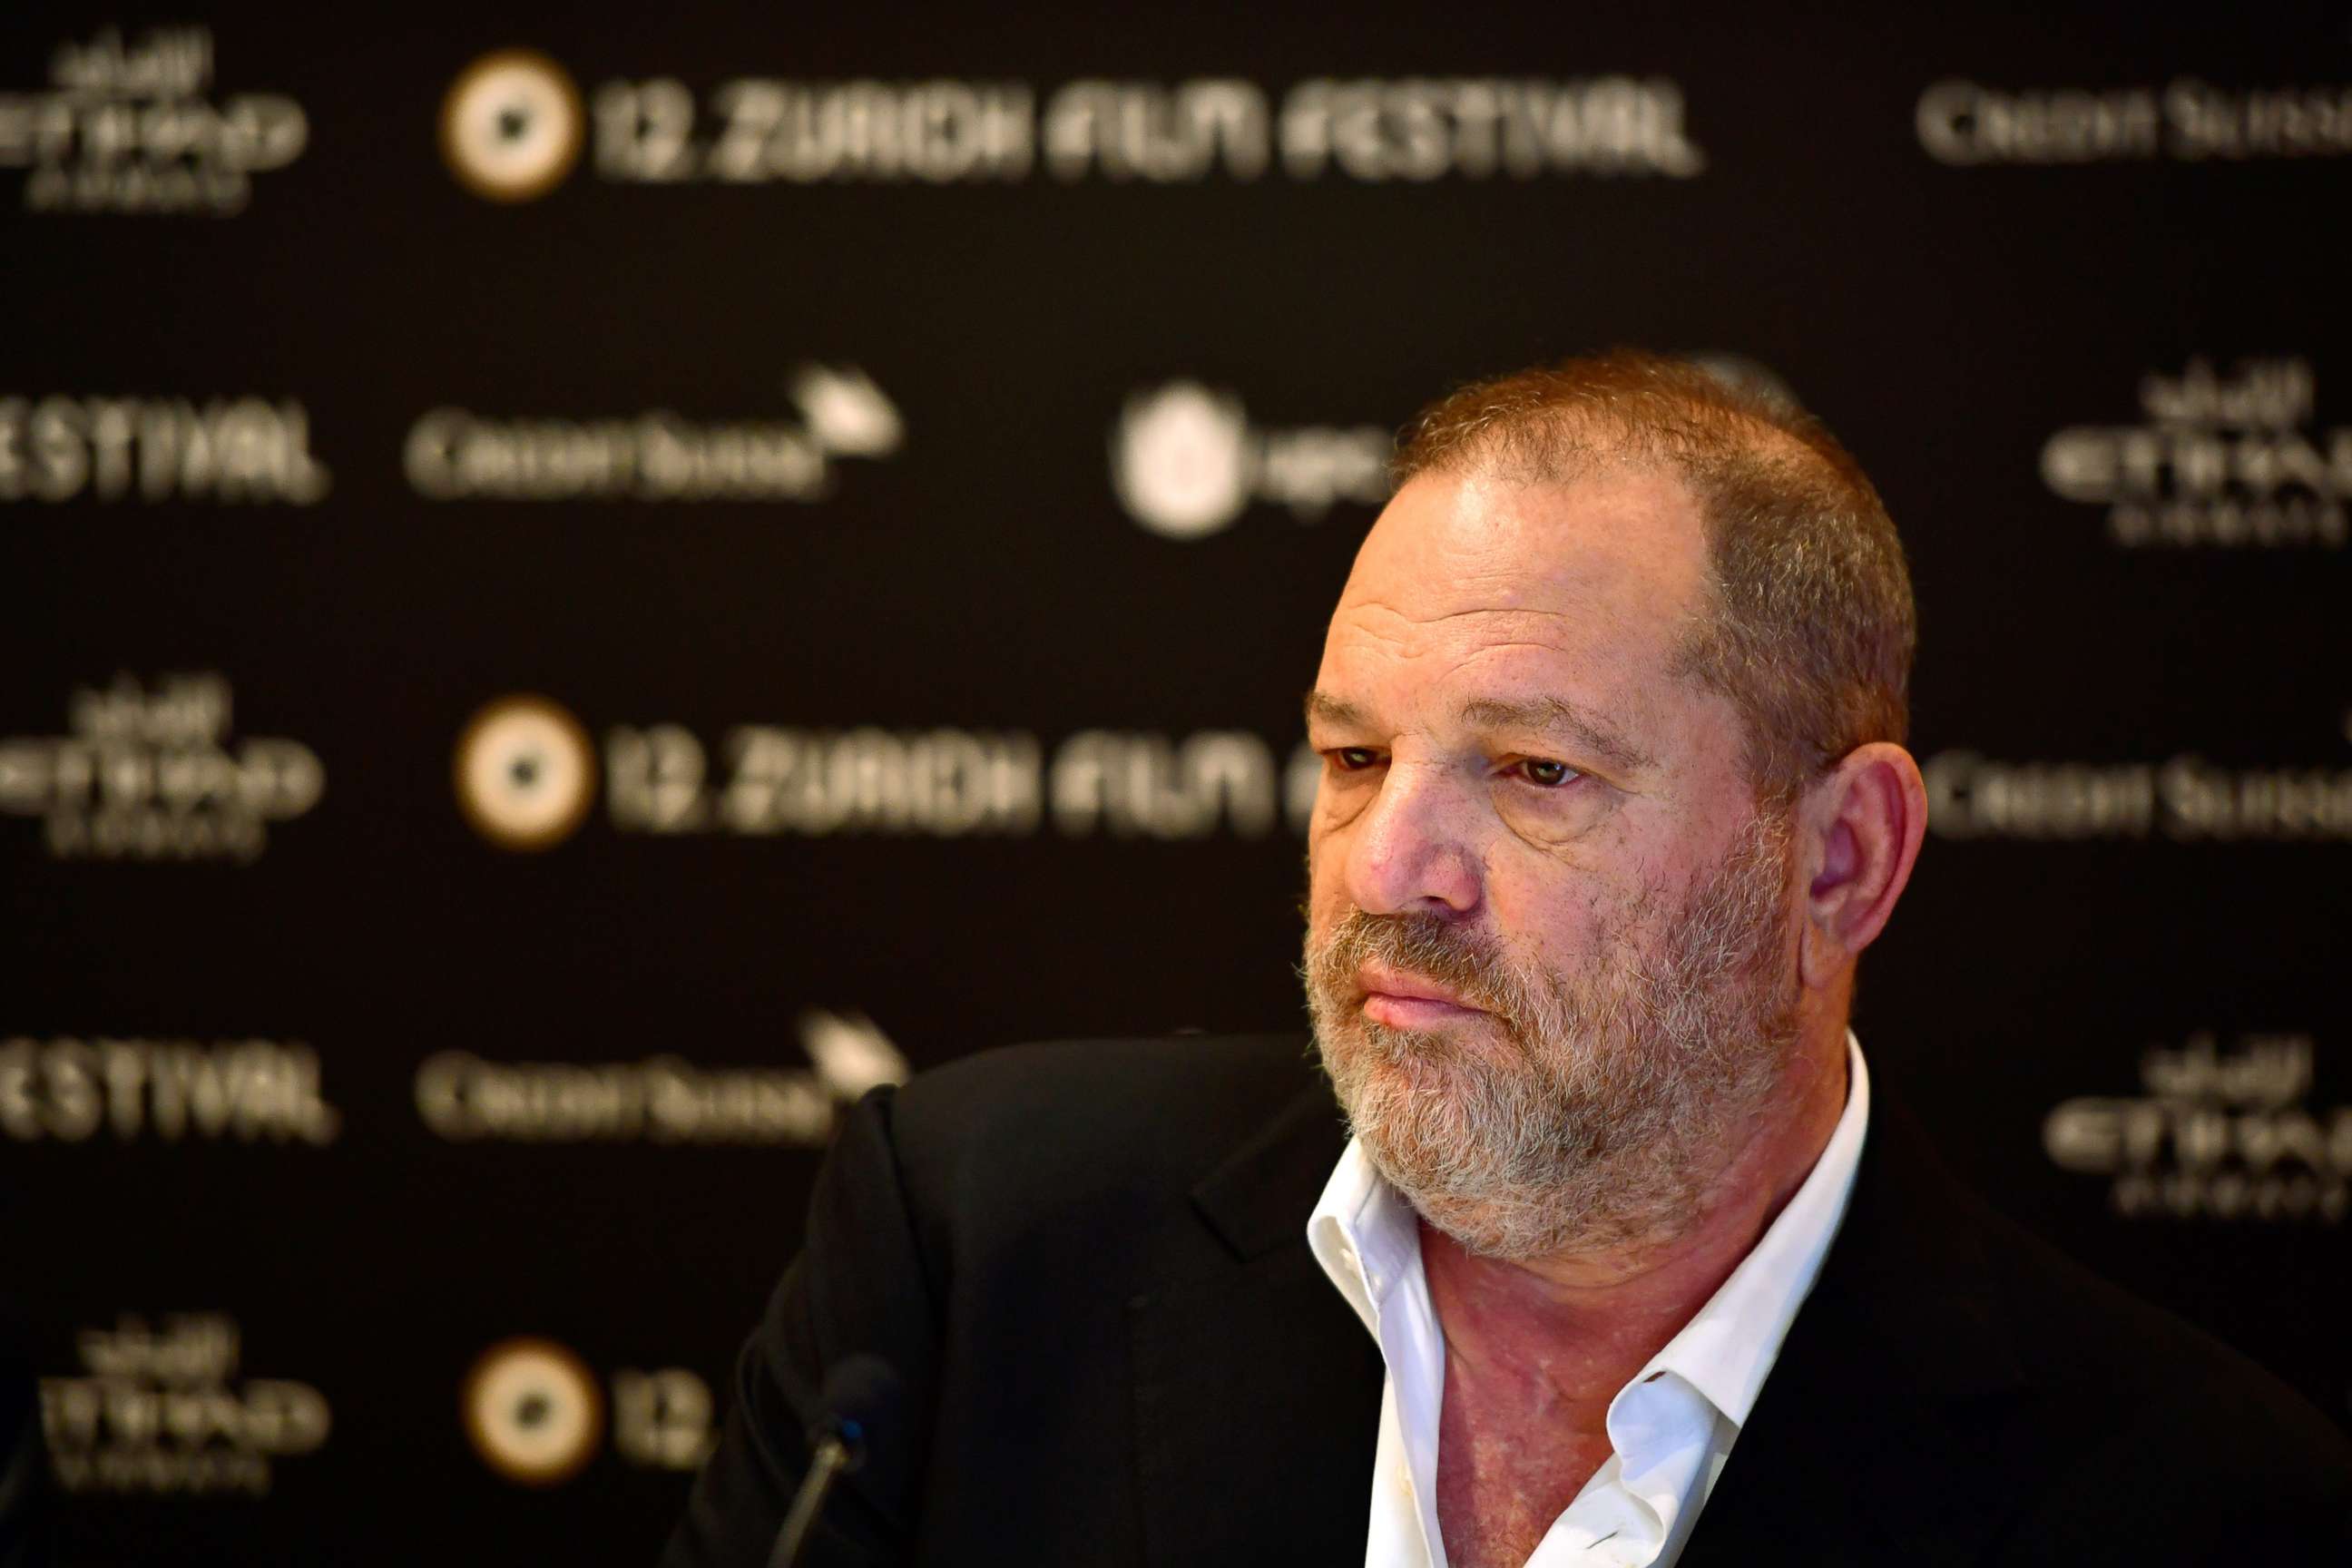 PHOTO: Harvey Weinstein speaks at a film festival in Zurich, Switzerland, Sept. 22, 2016.